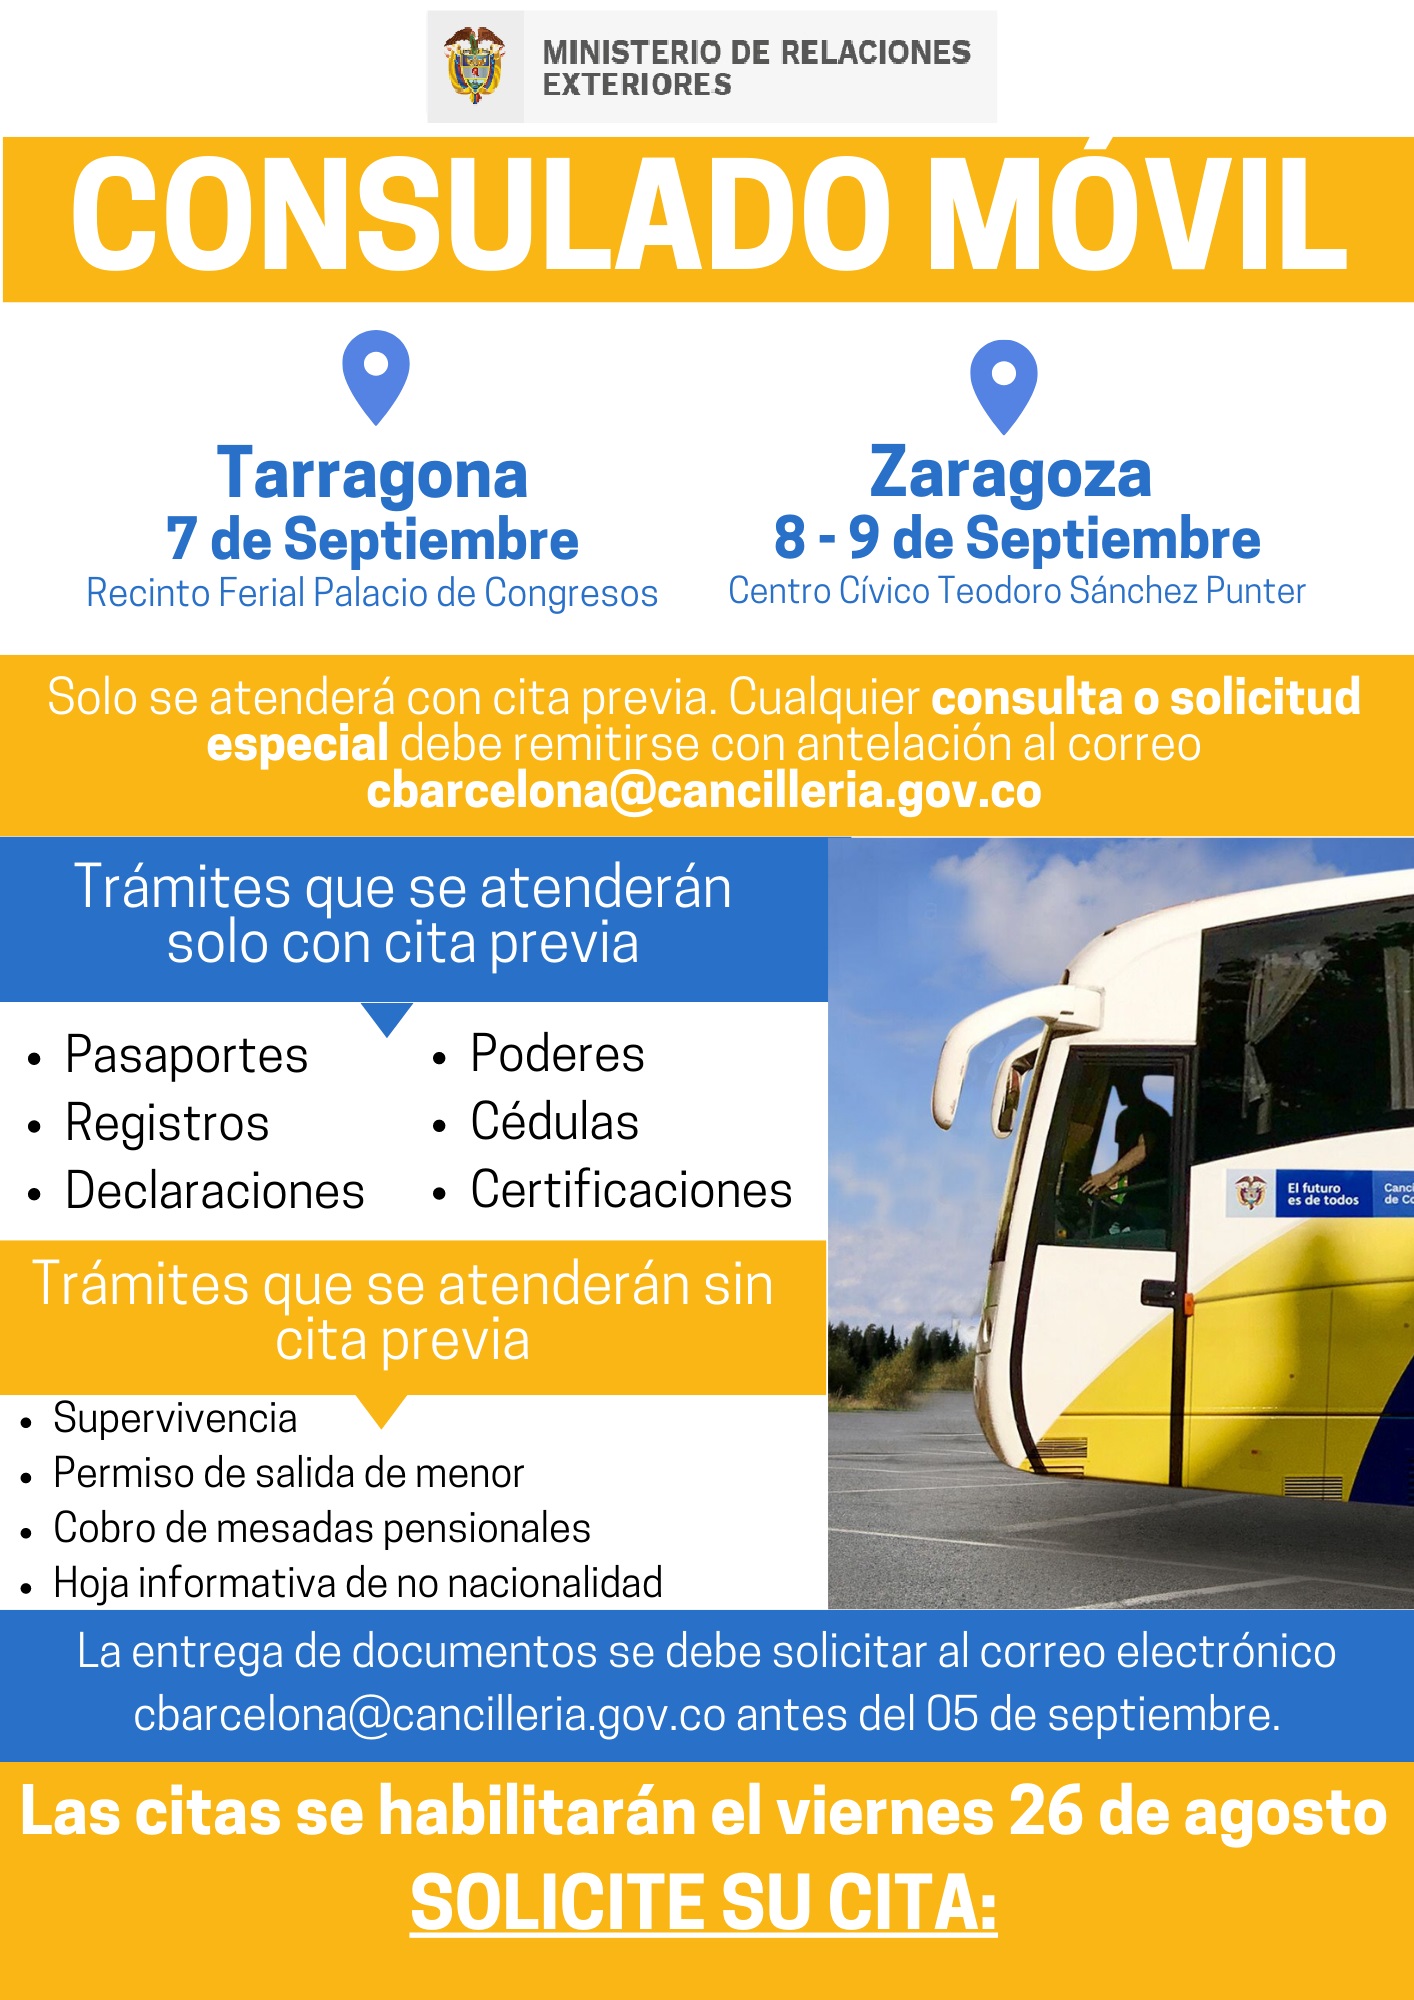 Jornada de Consulado Móvil en Tarragona y Zaragoza del 7 al 9 de septiembre de 2022